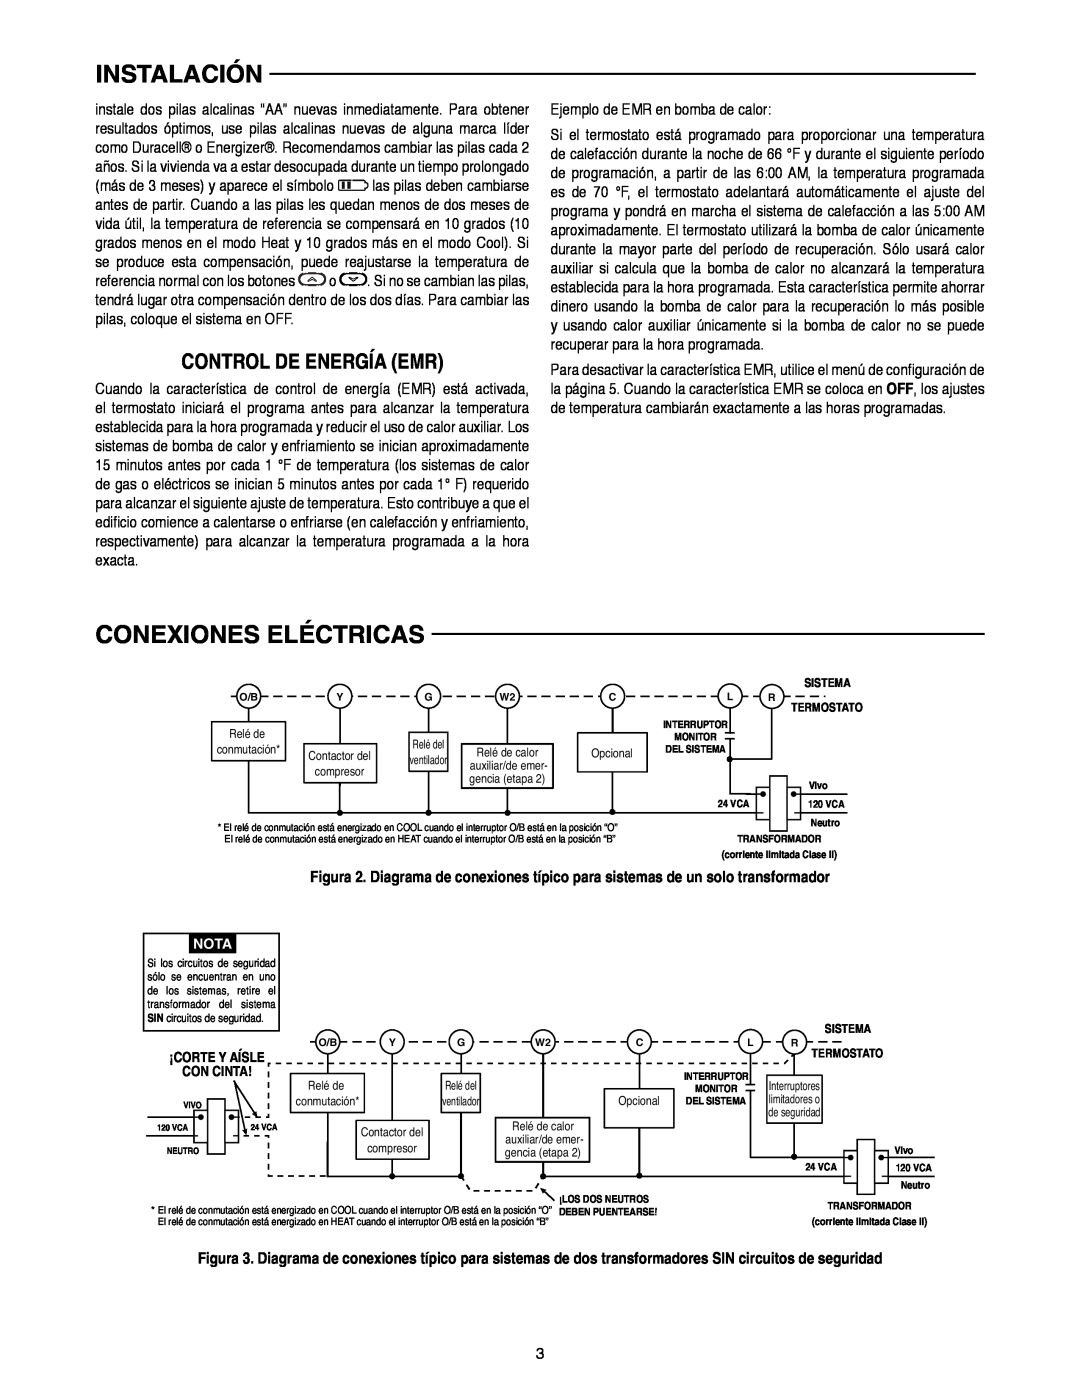 White Rodgers 1F82-0261 manual Conexiones Eléctricas, Control De Energía Emr, Instalación, Ejemplo de EMR en bomba de calor 